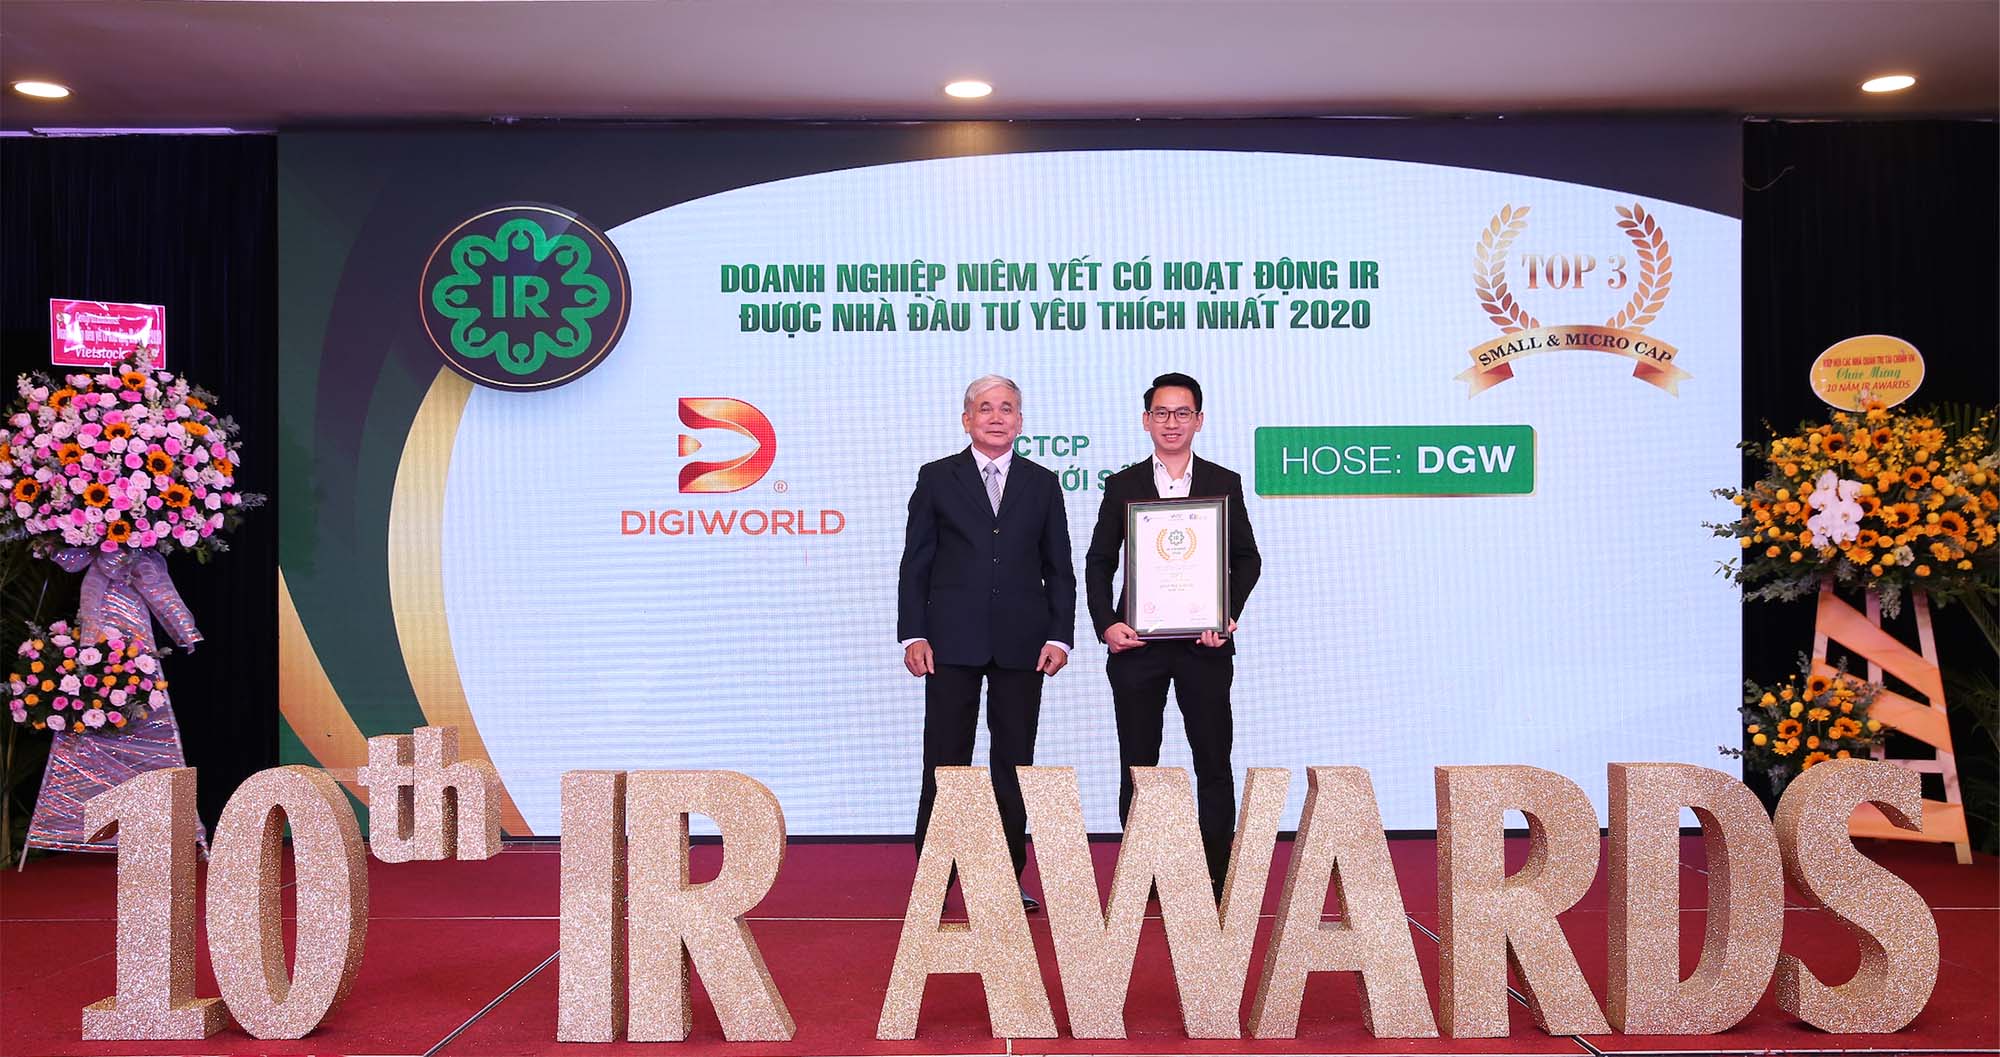 Lần thứ 3, Digiworld nhận 02 giải thưởng doanh nghiệp niêm yết có hoạt động IR tốt nhất